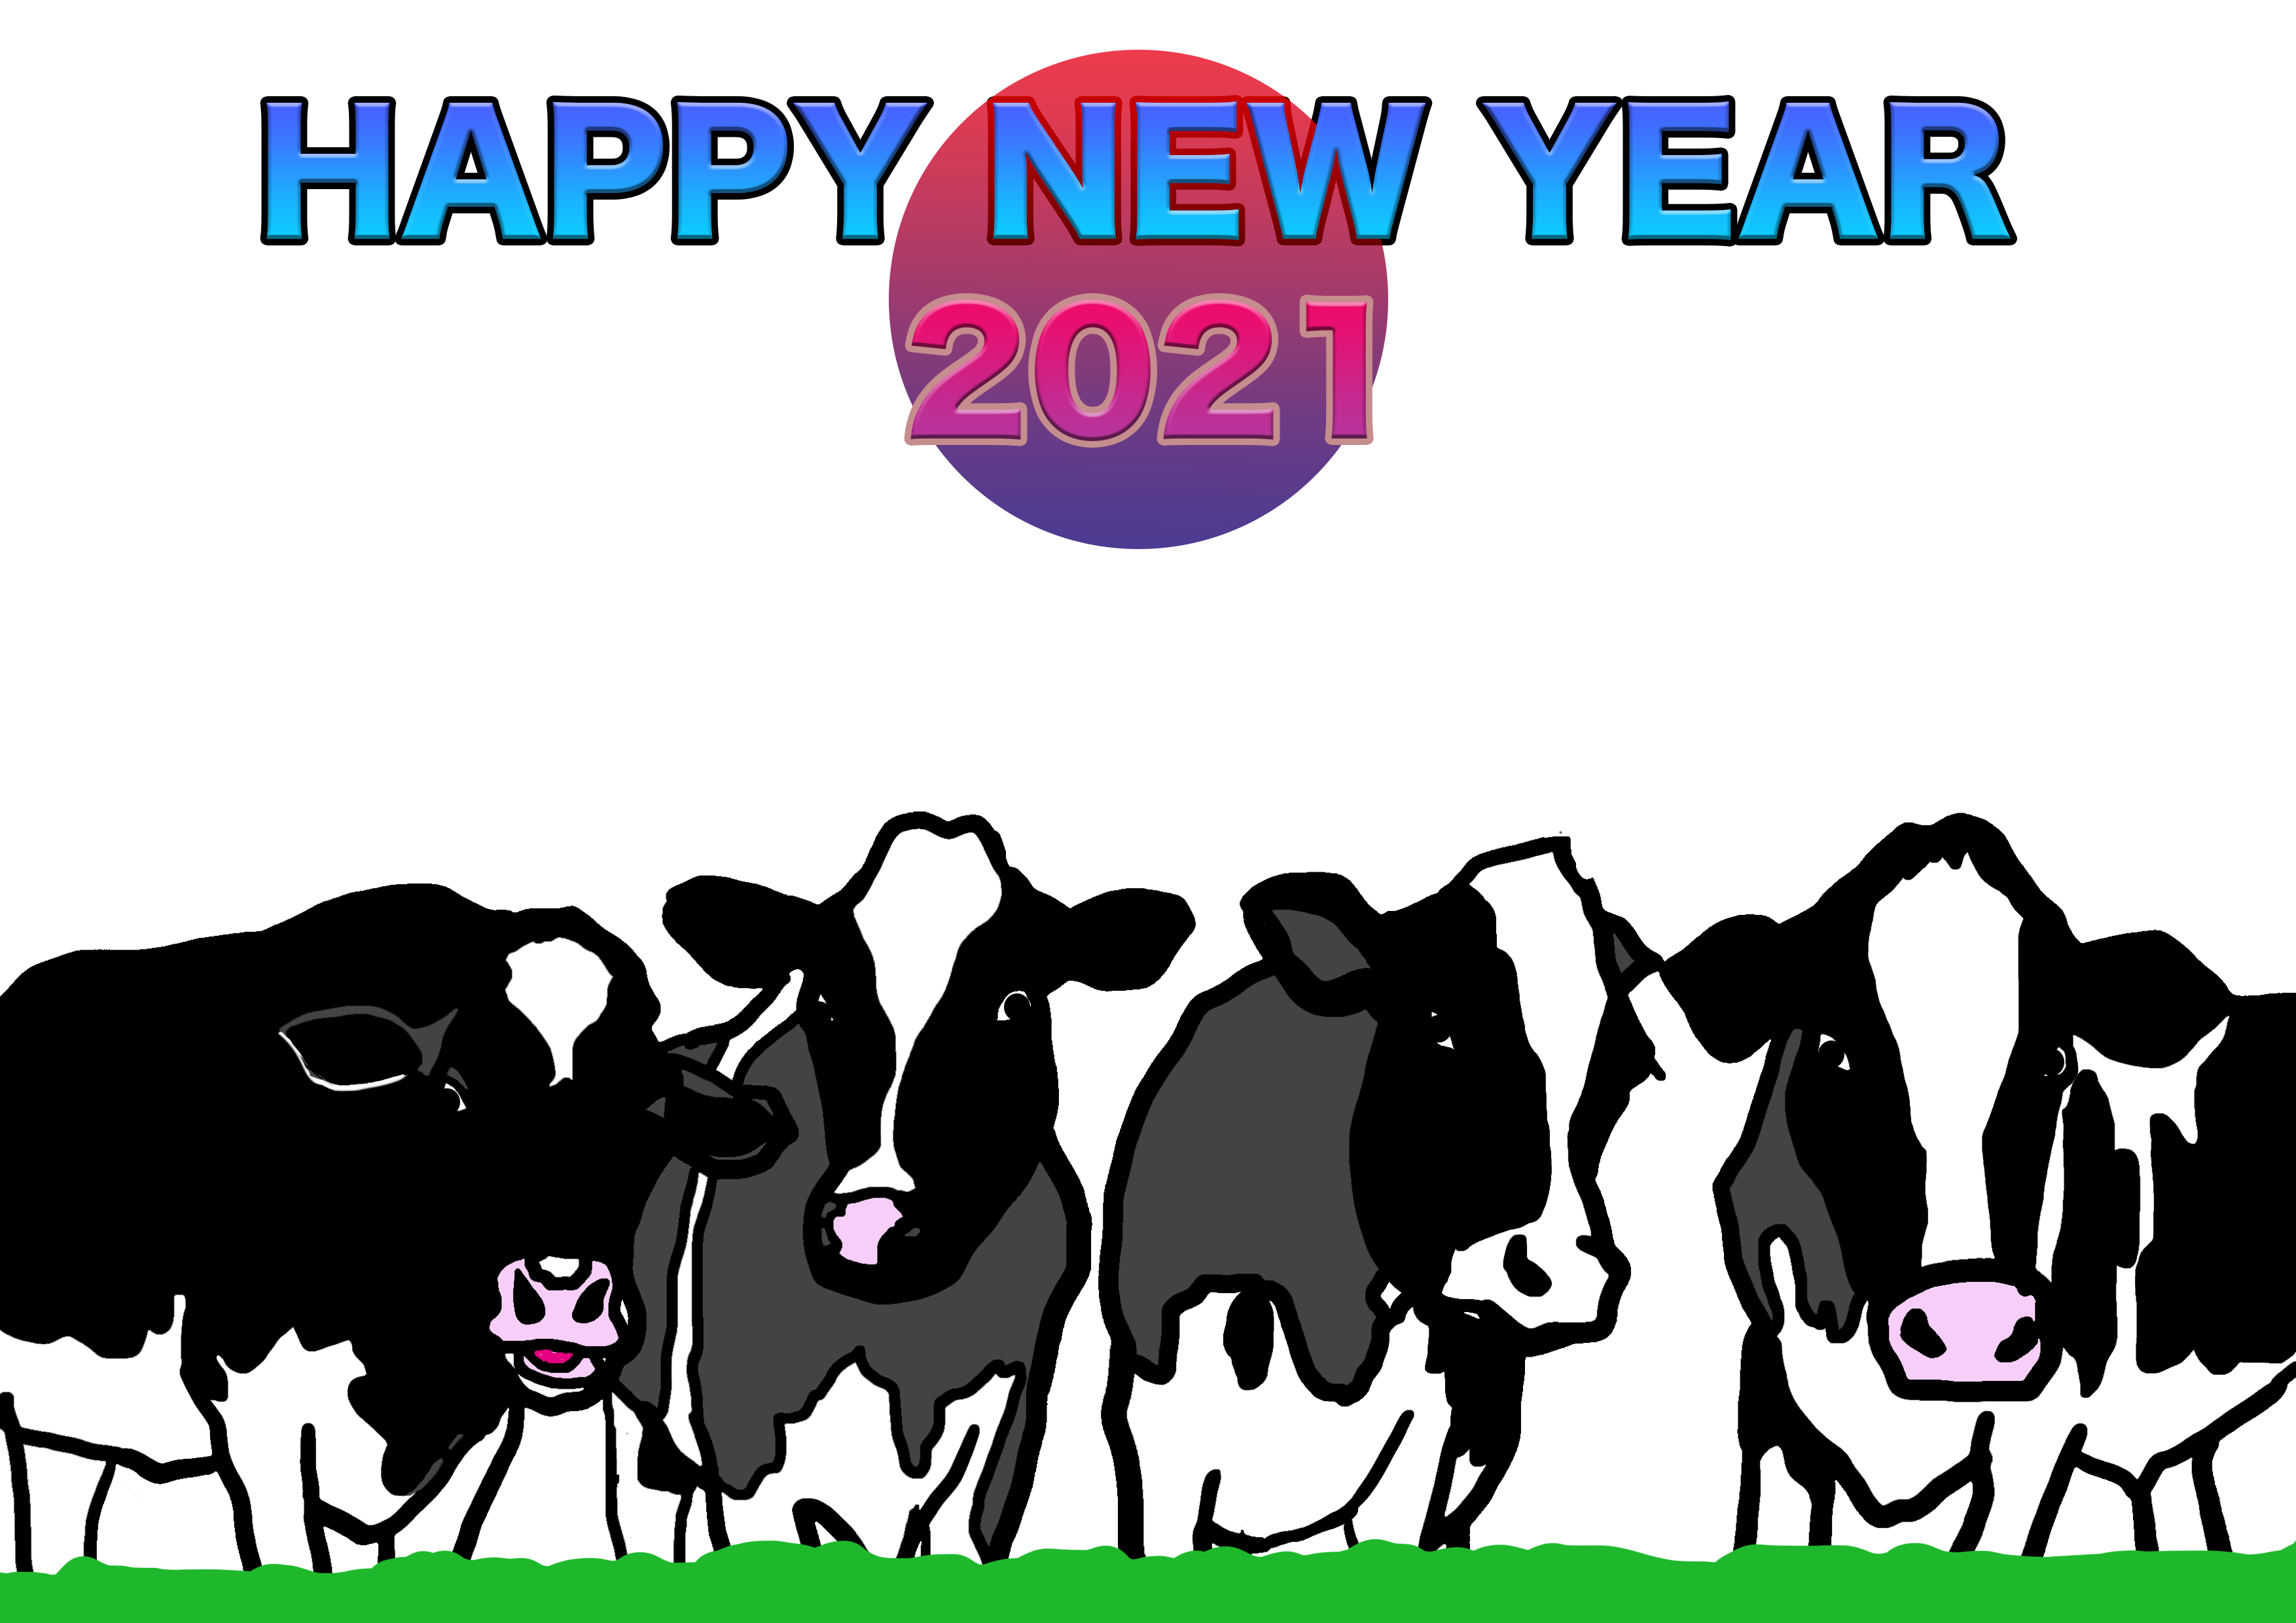 2021牛年のうしのイラスト年賀状素材cow